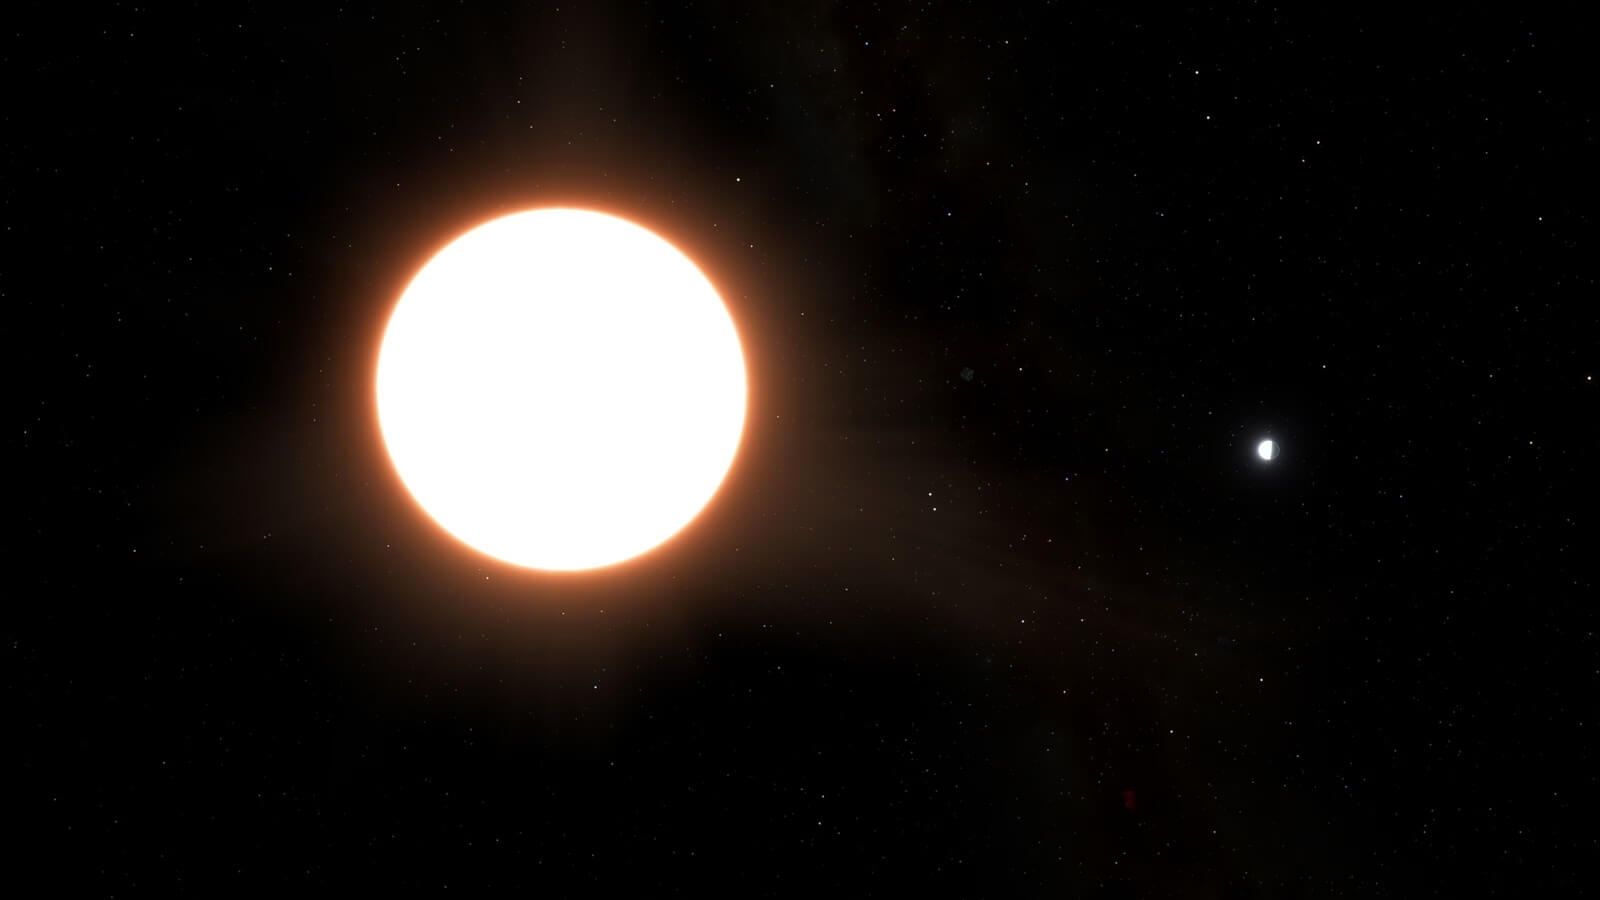 Открытие новых миров. Далекая планета под названием LTT9779 b отражает 80% света своей звезды, что делает странный мир с металлическими облаками самым большим известным «зеркалом» во Вселенной. Год в этом зеркальном мире длится всего 19 часов. Фото.